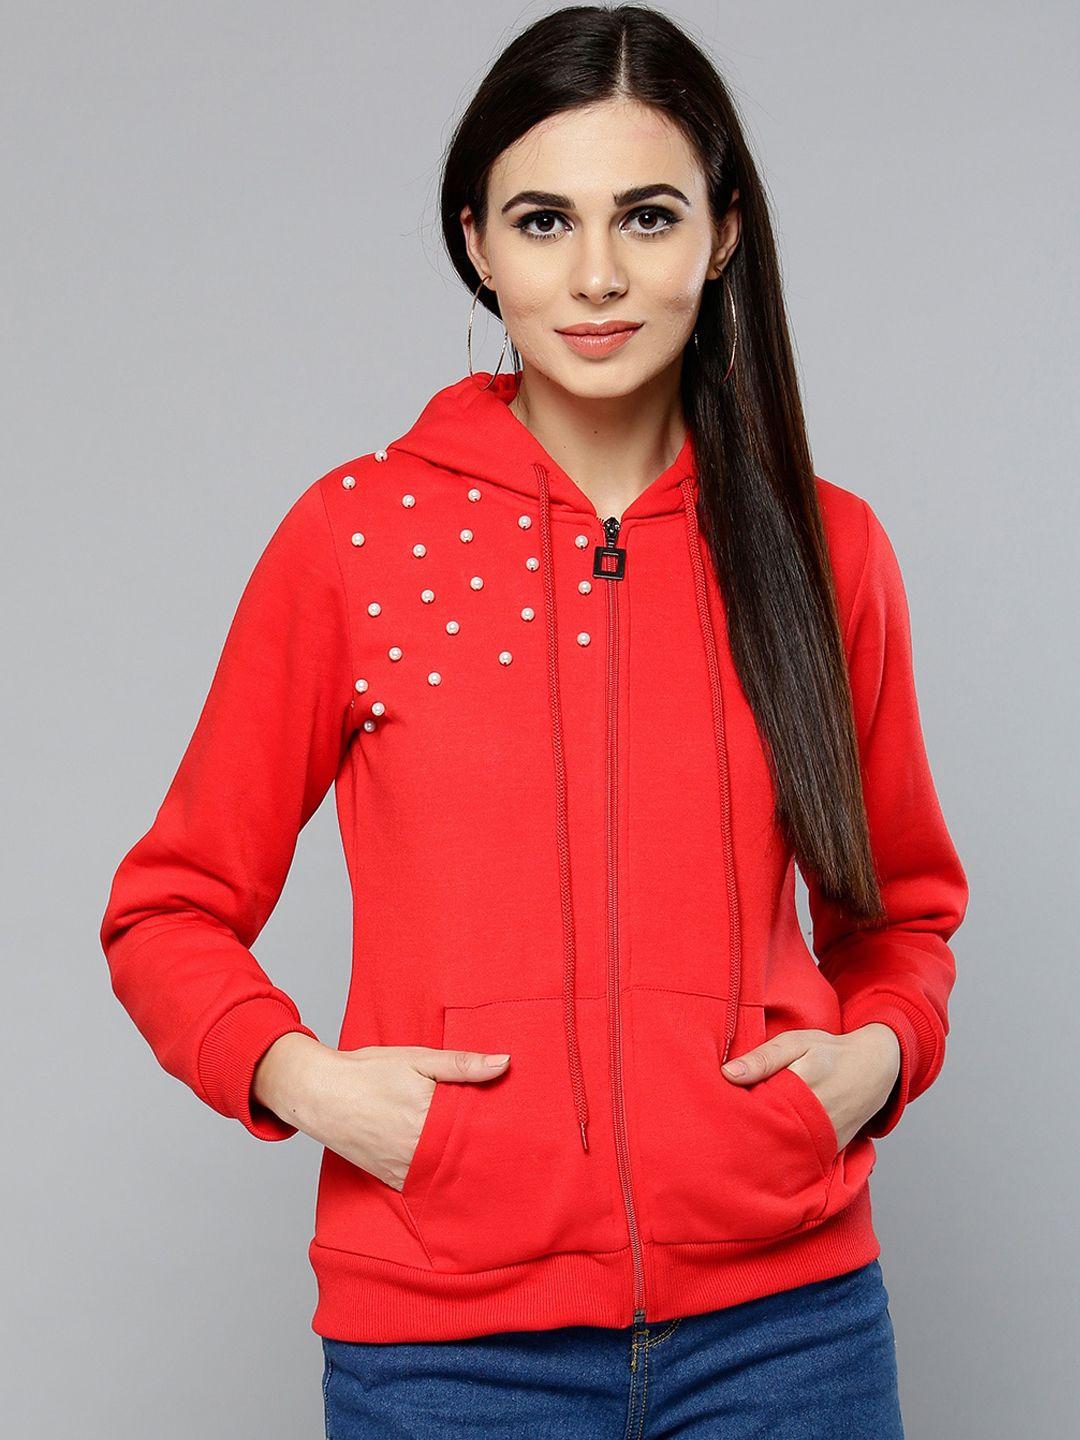 carlton-london-women-red-solid-sweatshirt